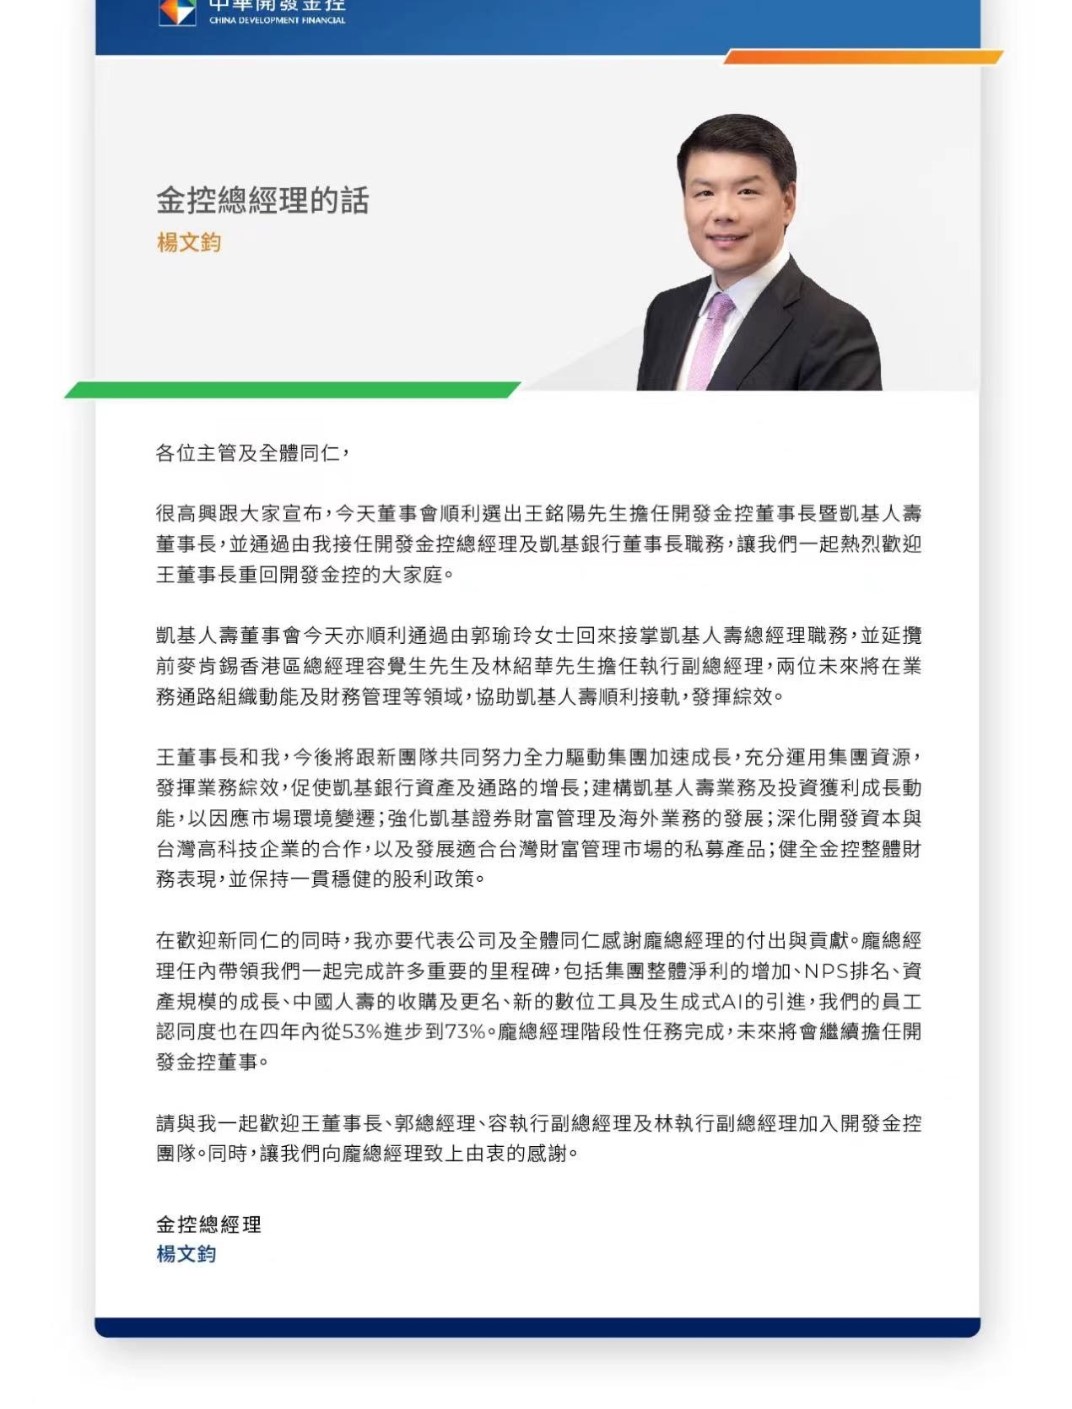 开发金新任总经理杨文钧给员工的信。读者提供